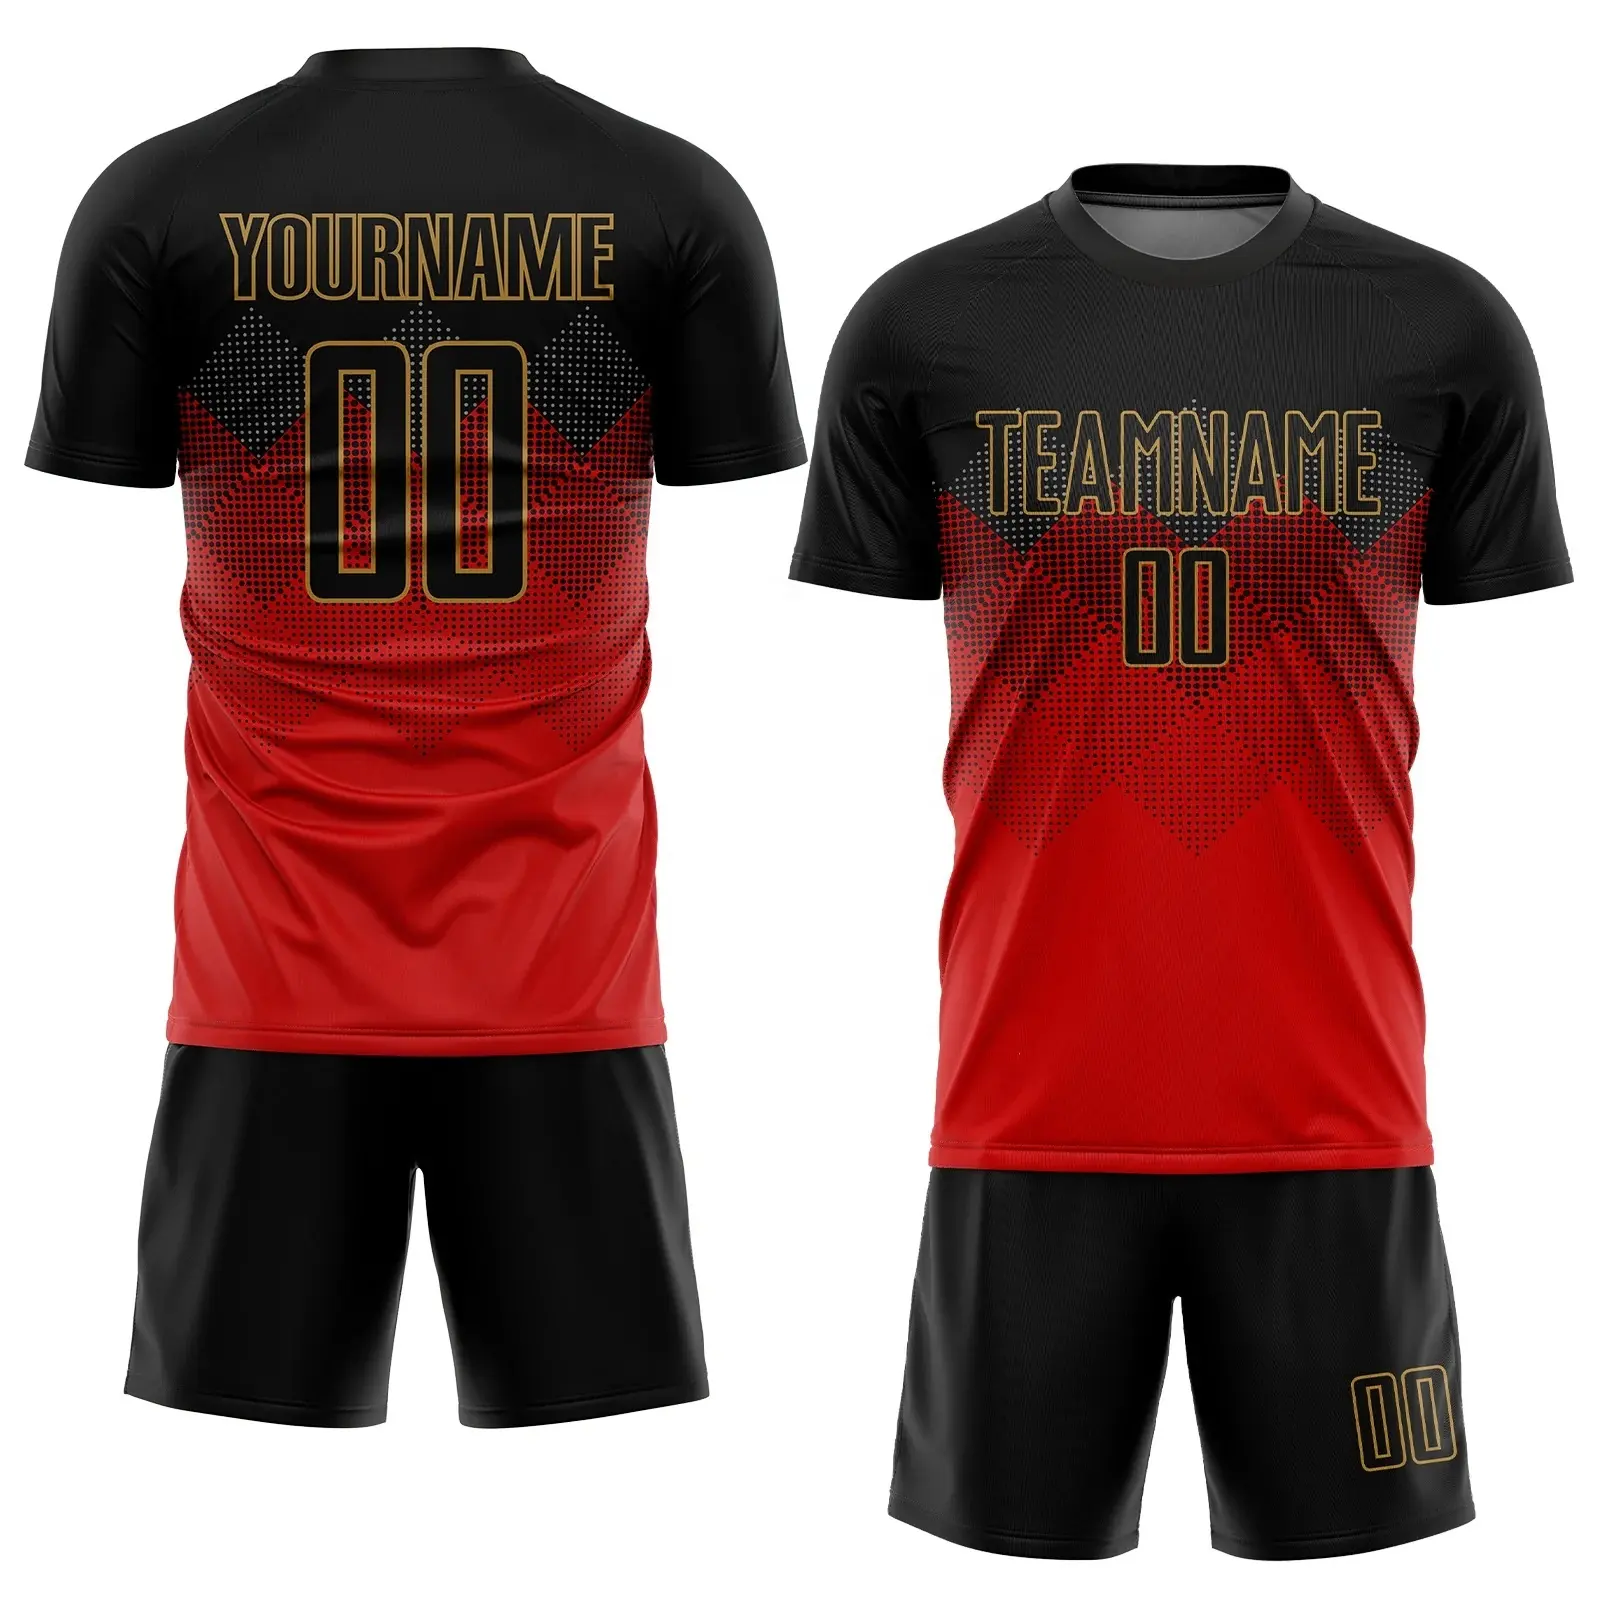 Großhandel Günstige Preis Club und Team Neueste Designs Jugend Sublimated Soccer Uniform Set Benutzer definierte Fußball trikot